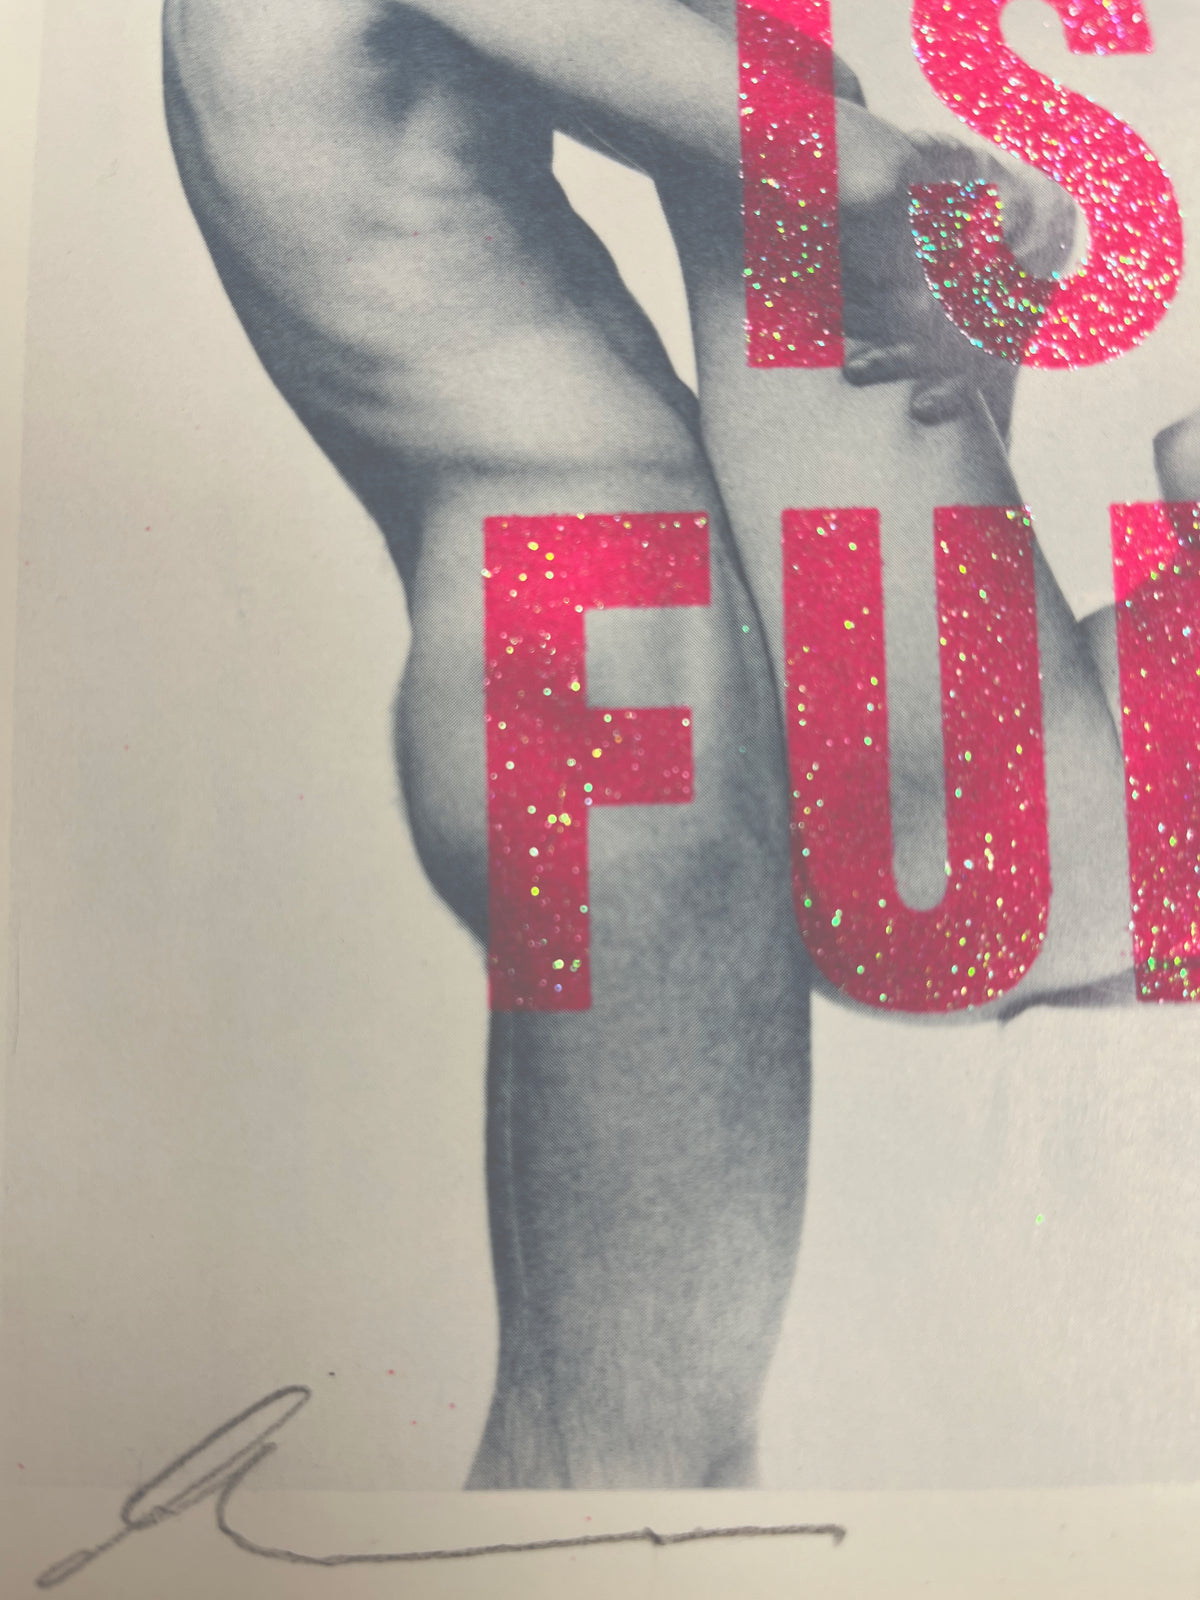 Love Is Fun by Dave Buonaguidi